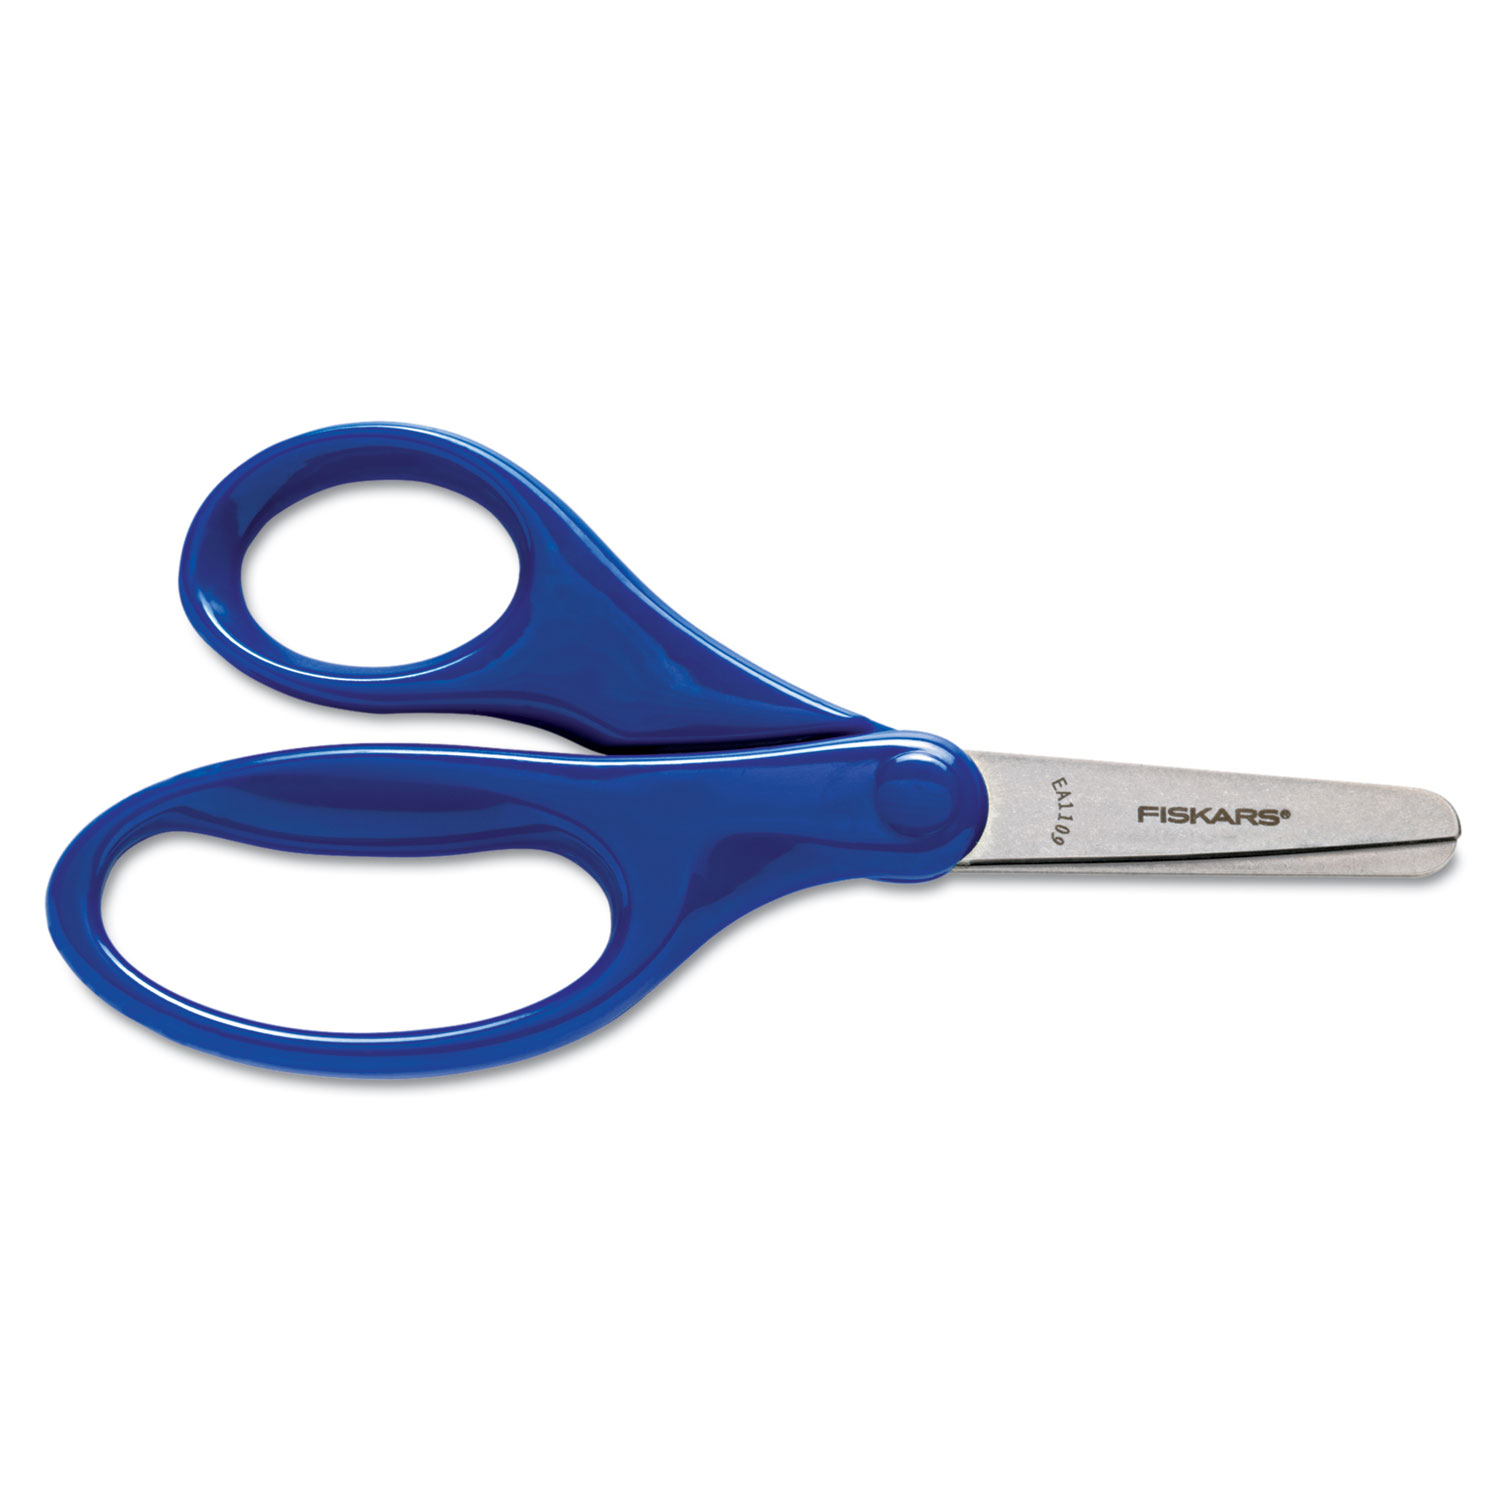  Fiskars 94167097 Kids/Student Scissors, Rounded Tip, 5 Long, 1.75 Cut Length, Assorted Straight Handles (FSK94167097J) 